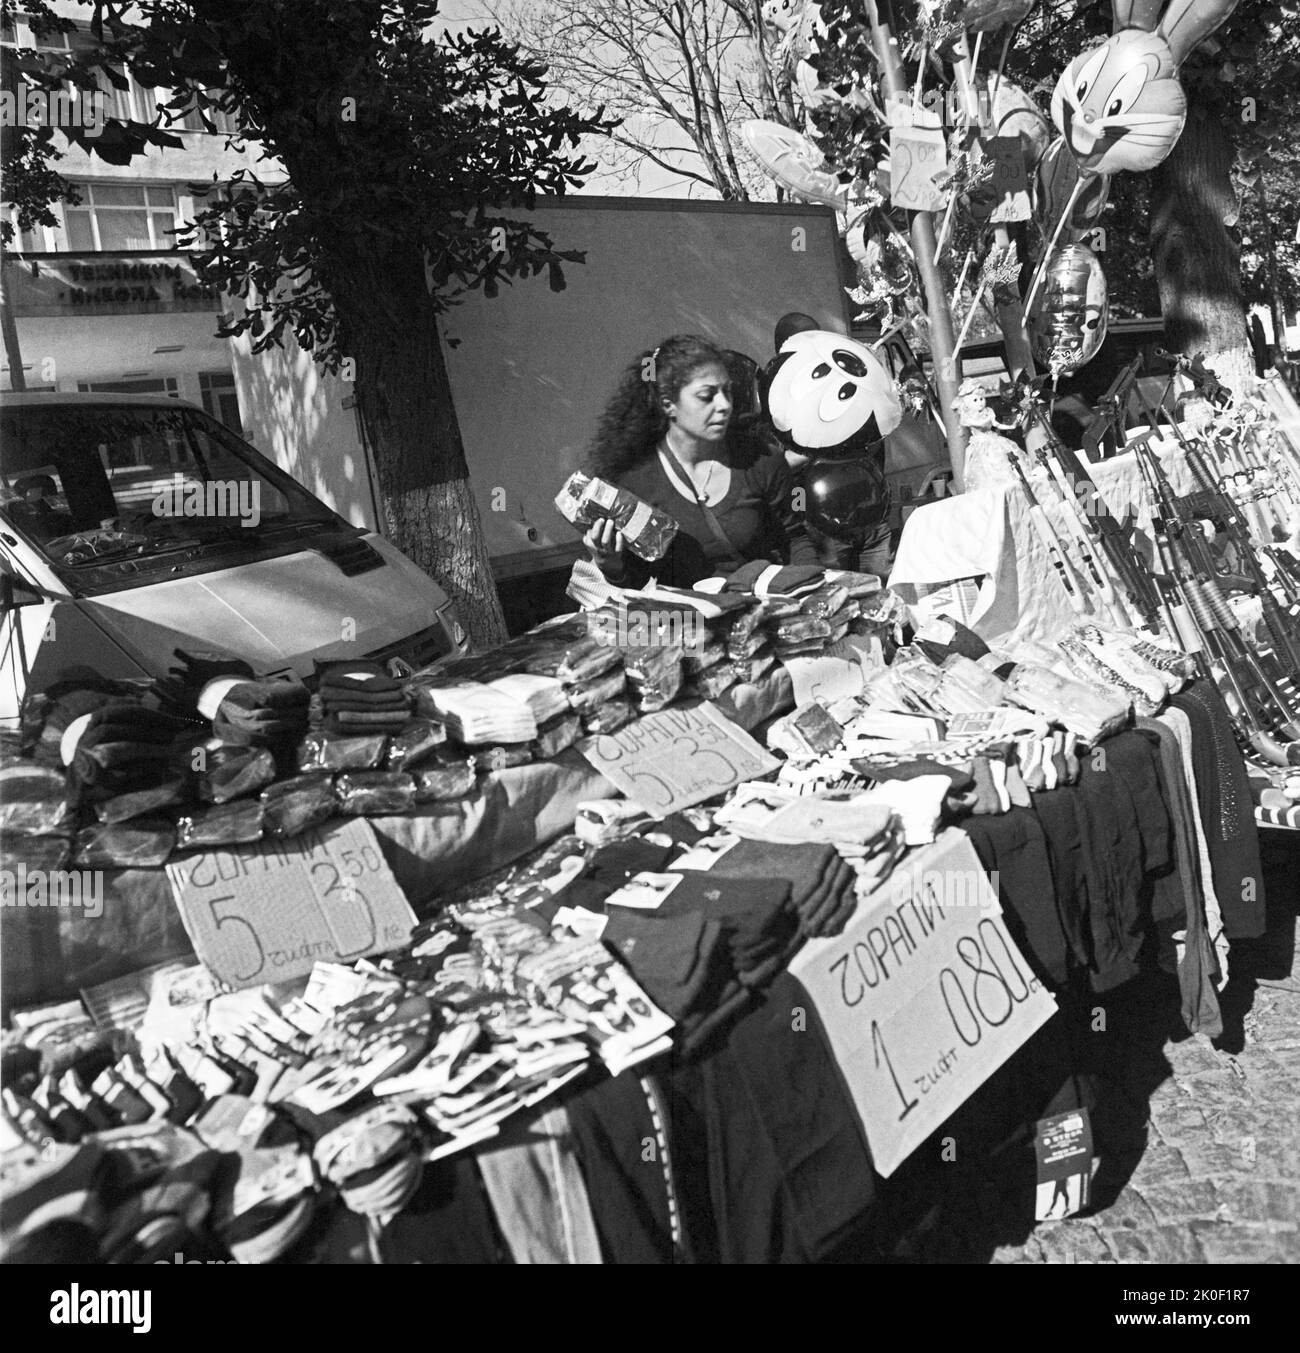 Fête de la ville de Radomir. Vendeur de chaussettes. Bulgarie. Jour de Saint-Demetrius. Dimitrovden. Juste. Banque D'Images